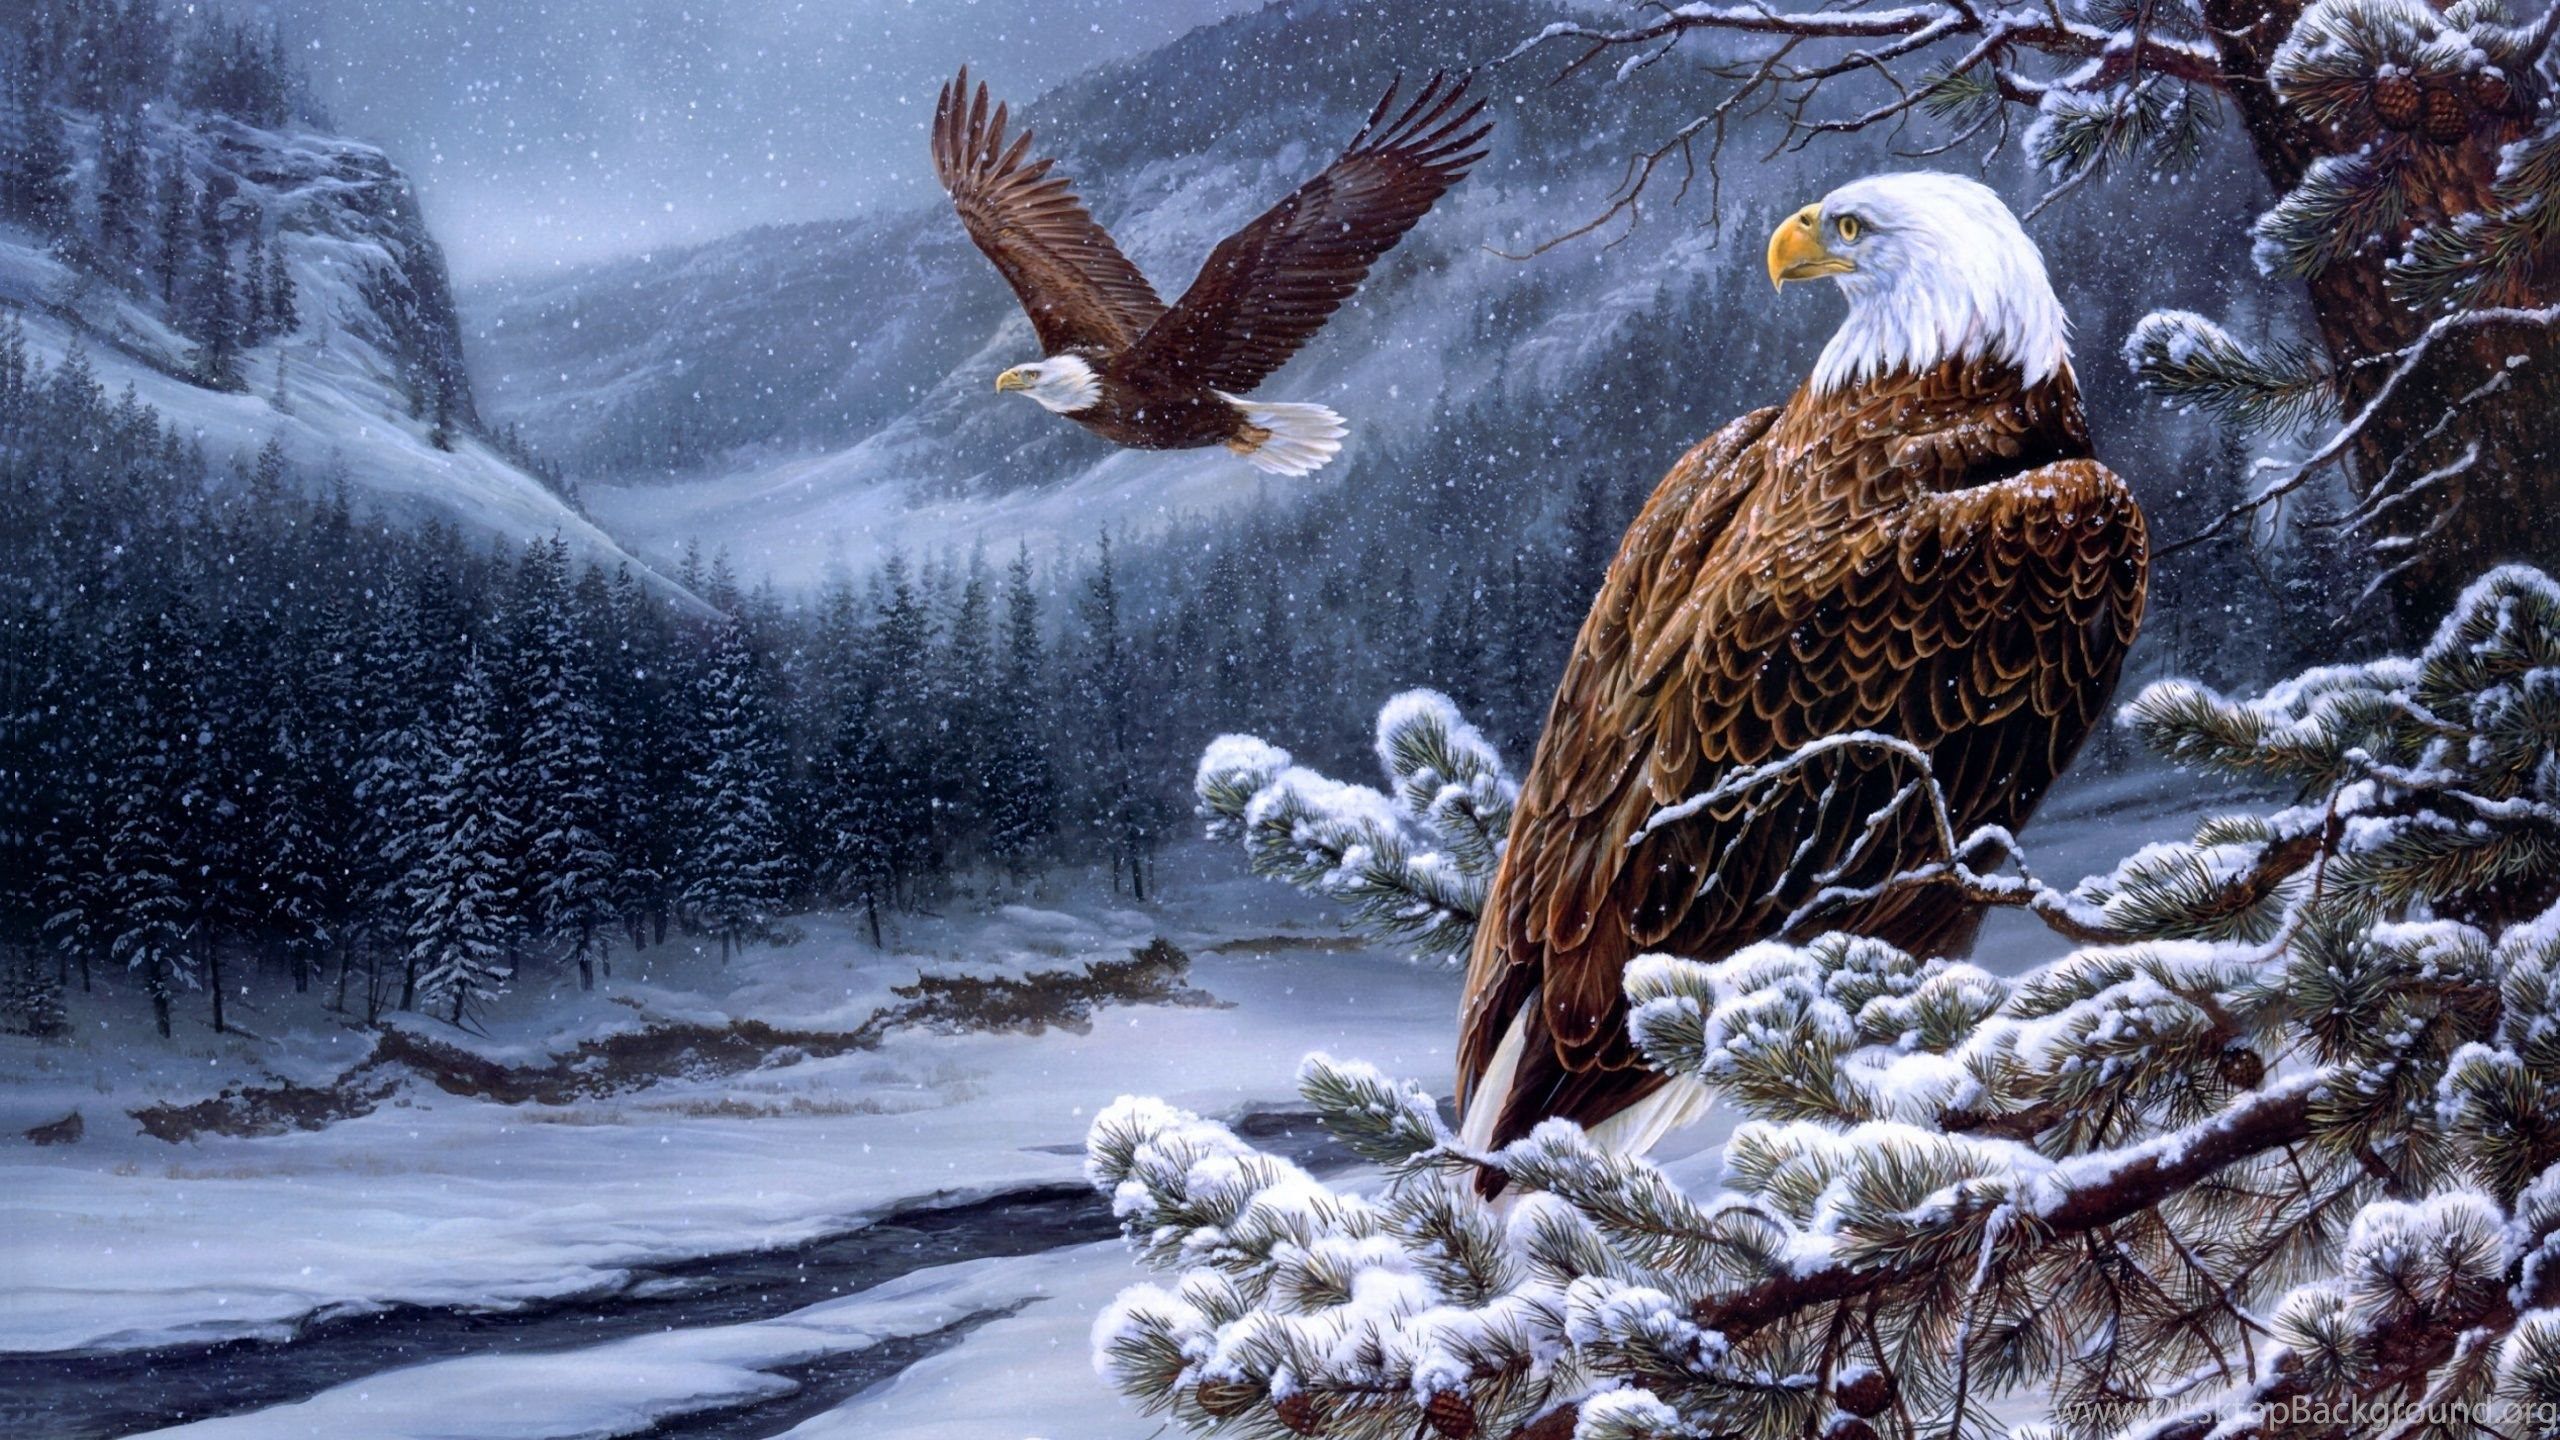 Flying Bald Eagle Uhd Wallpaper Ultra High Definition. Desktop Background